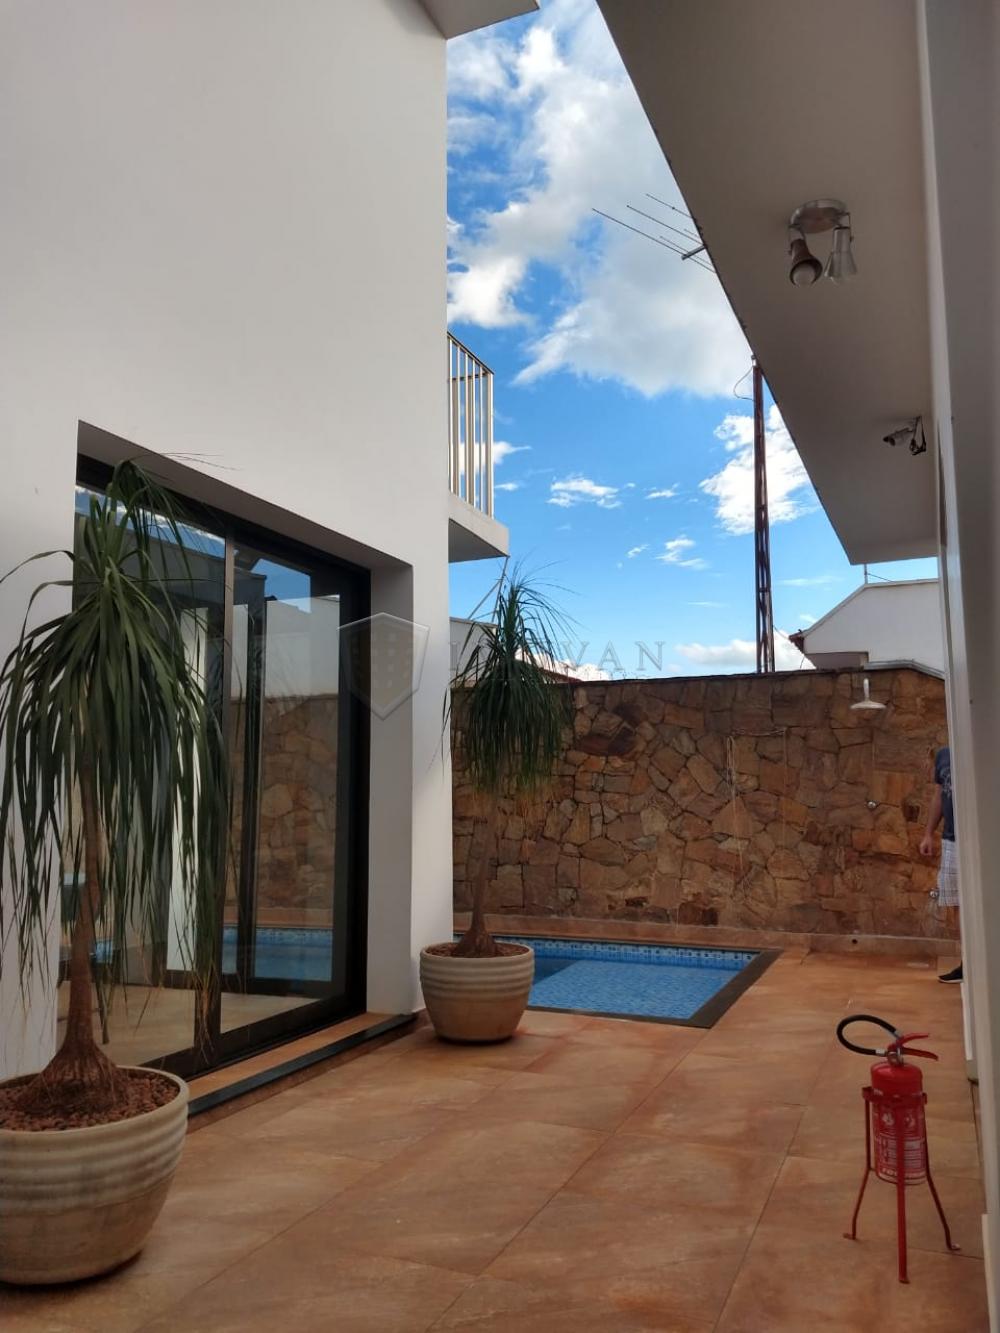 Alugar Casa / Padrão em Ribeirão Preto R$ 4.500,00 - Foto 15